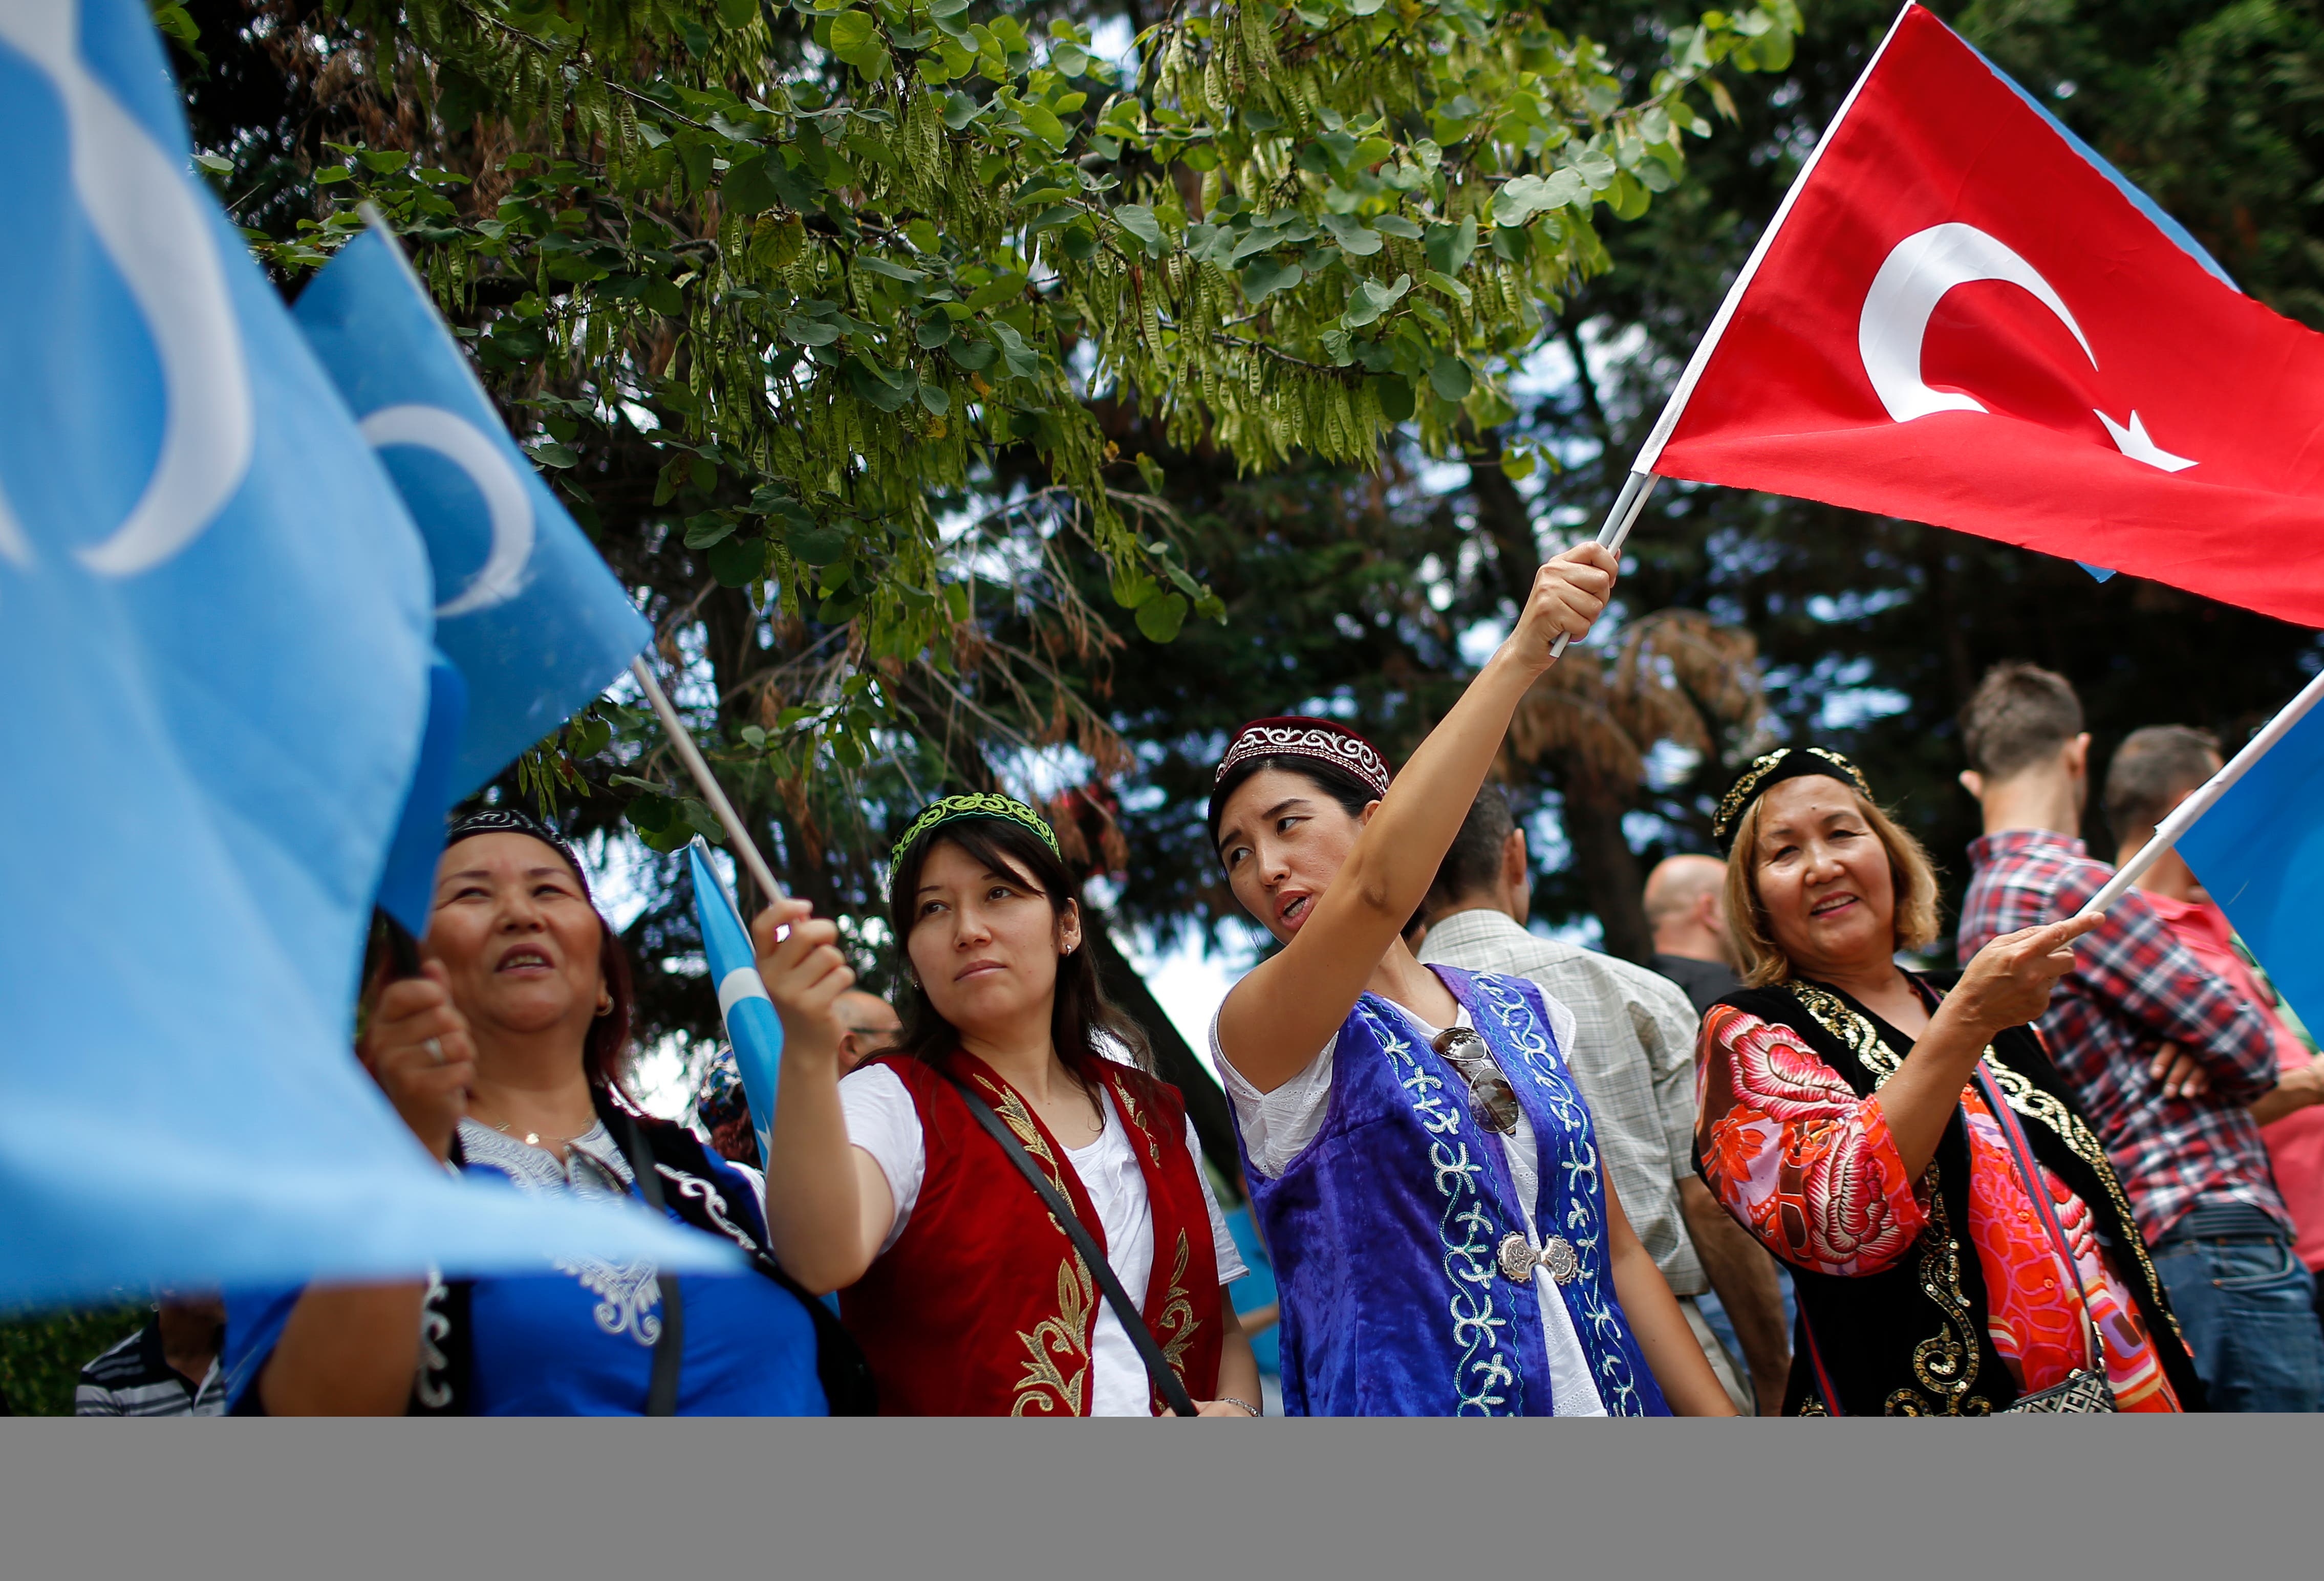 تظاهرات داعمة للإيغور في تركيا 